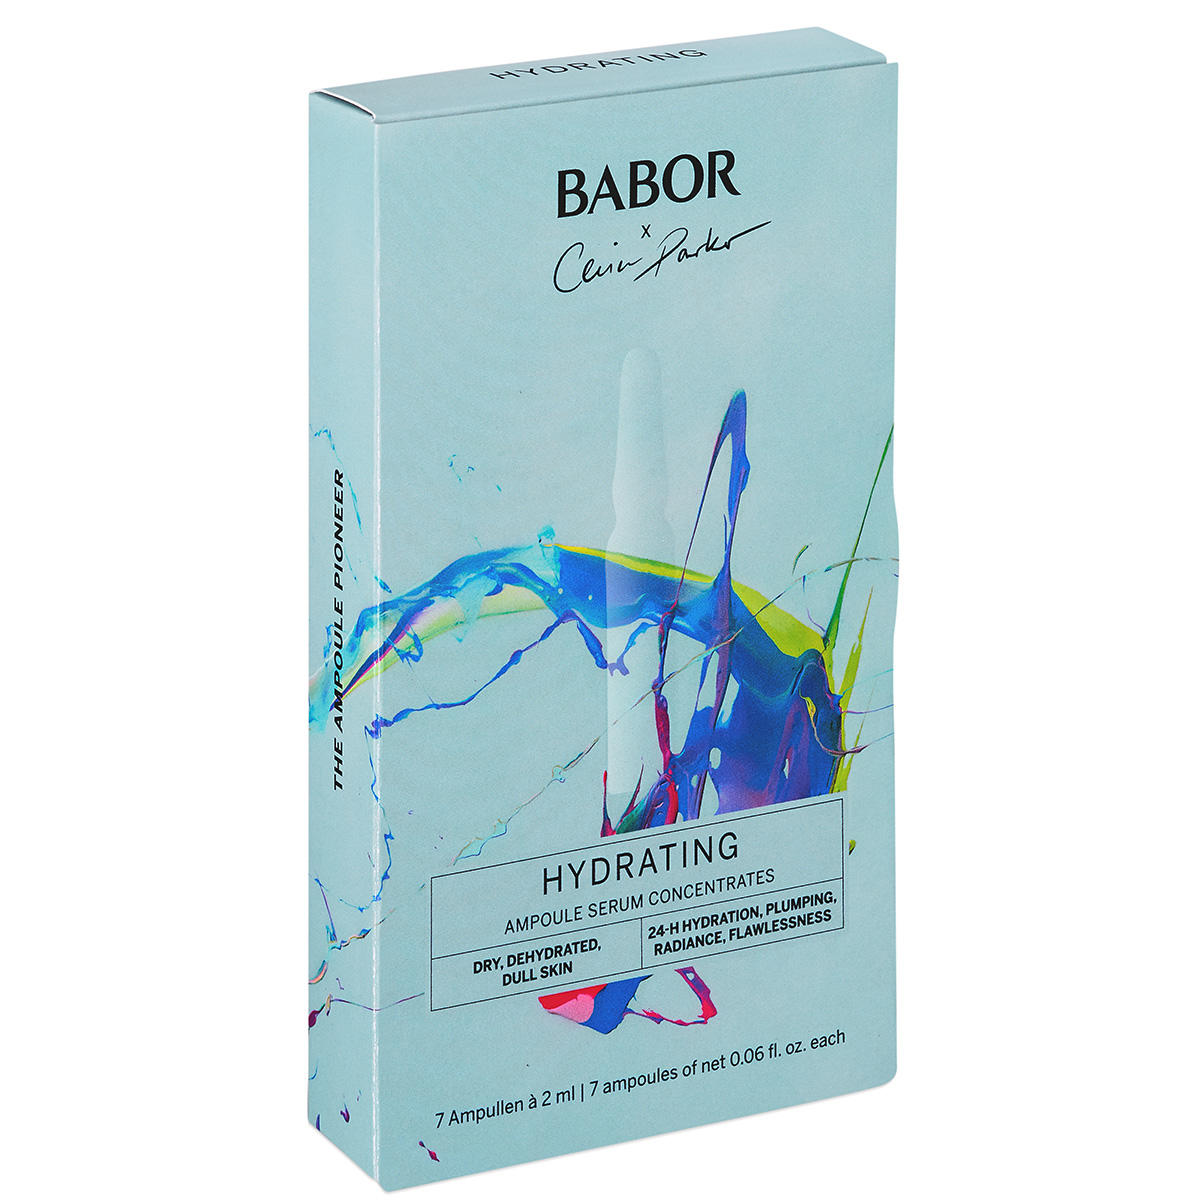 BABOR AMPOULE CONCENTRATES Ampoule Hydratante Edition Limitée 7 x 2 ml - 2